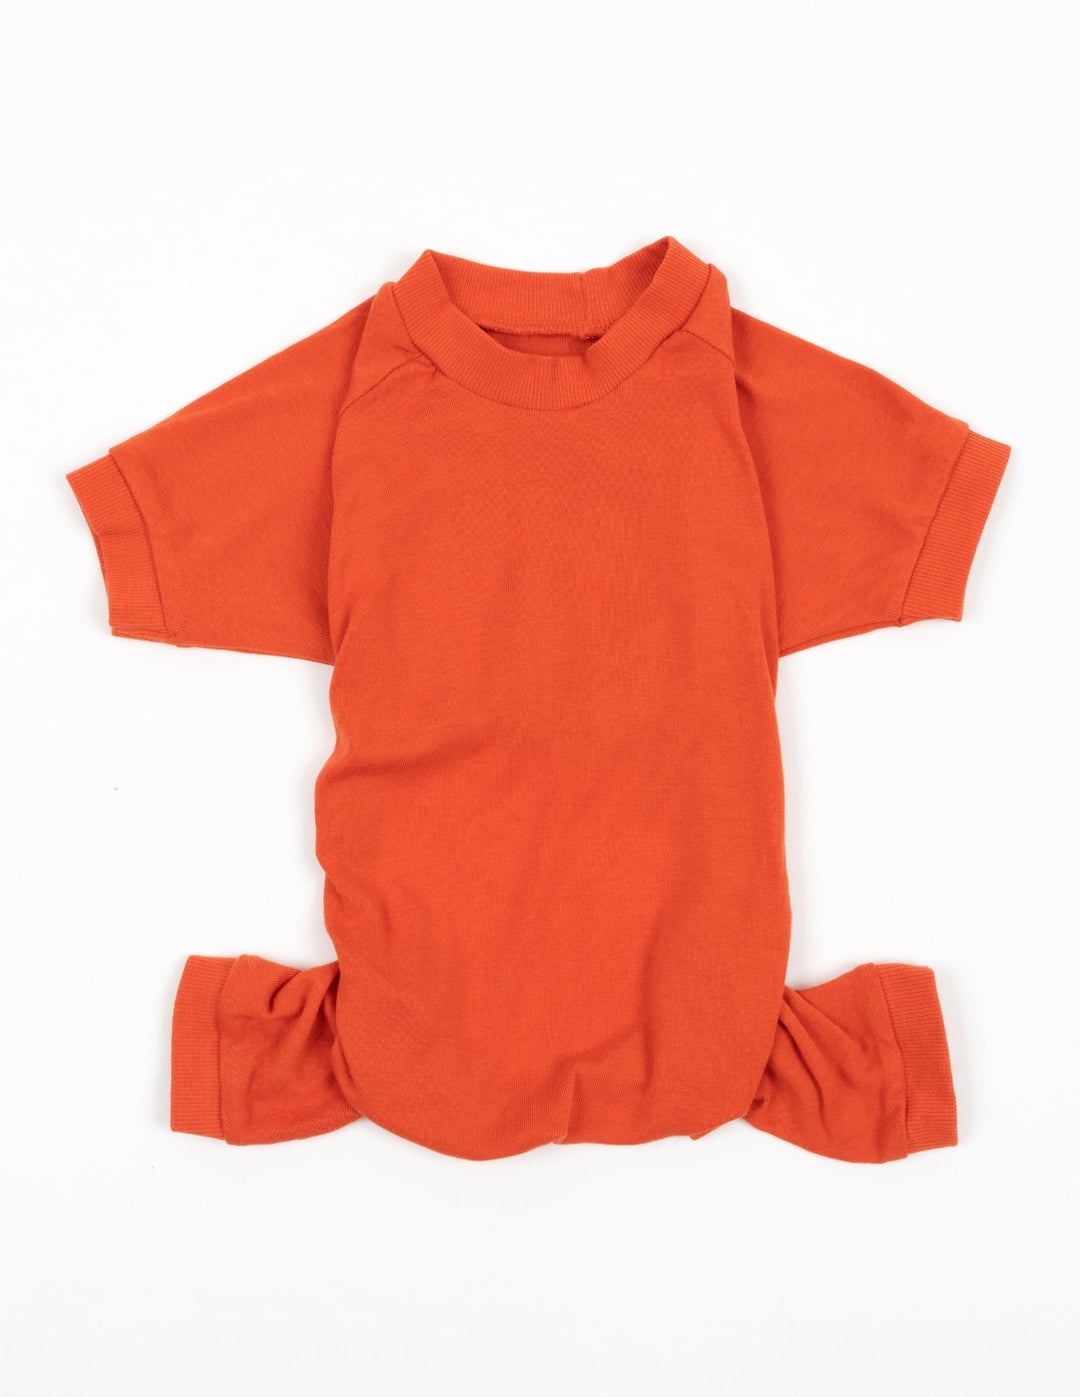 solid color orange dog pajamas